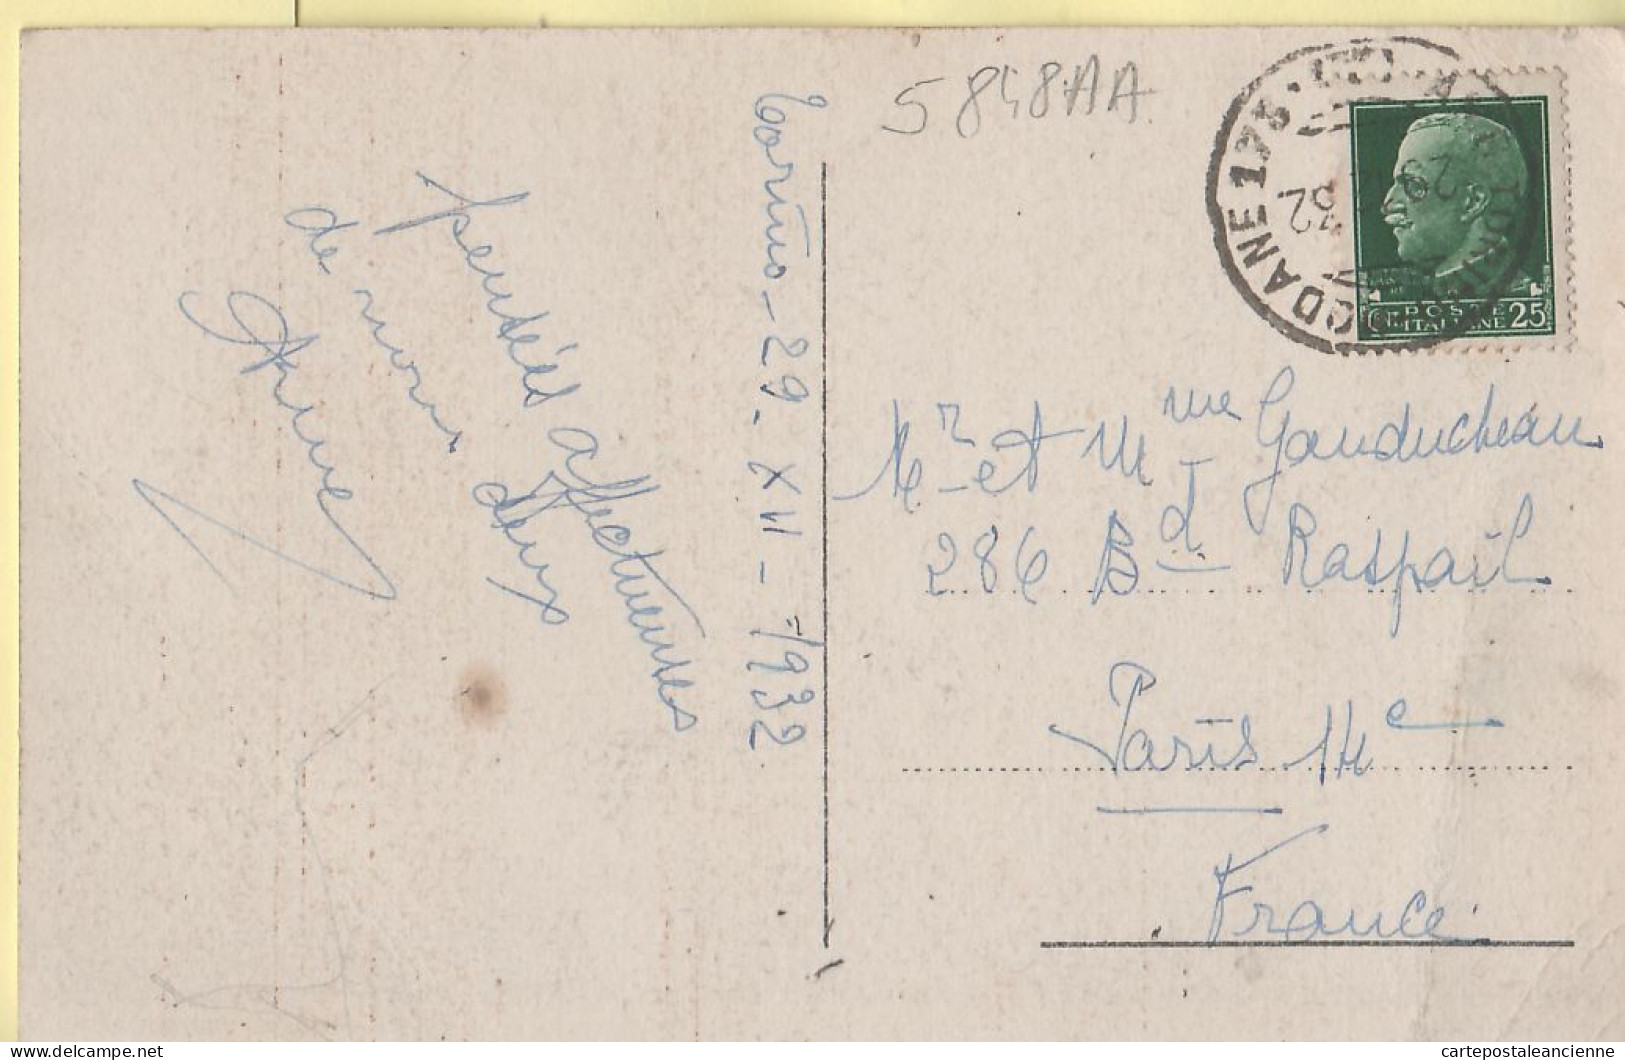 26836 / ⭐ Piemonte TORINO Turin PALAZZO MADAMA Circulato 29.12.1932 à GAUDUCHEAU Paris - Altri Monumenti, Edifici